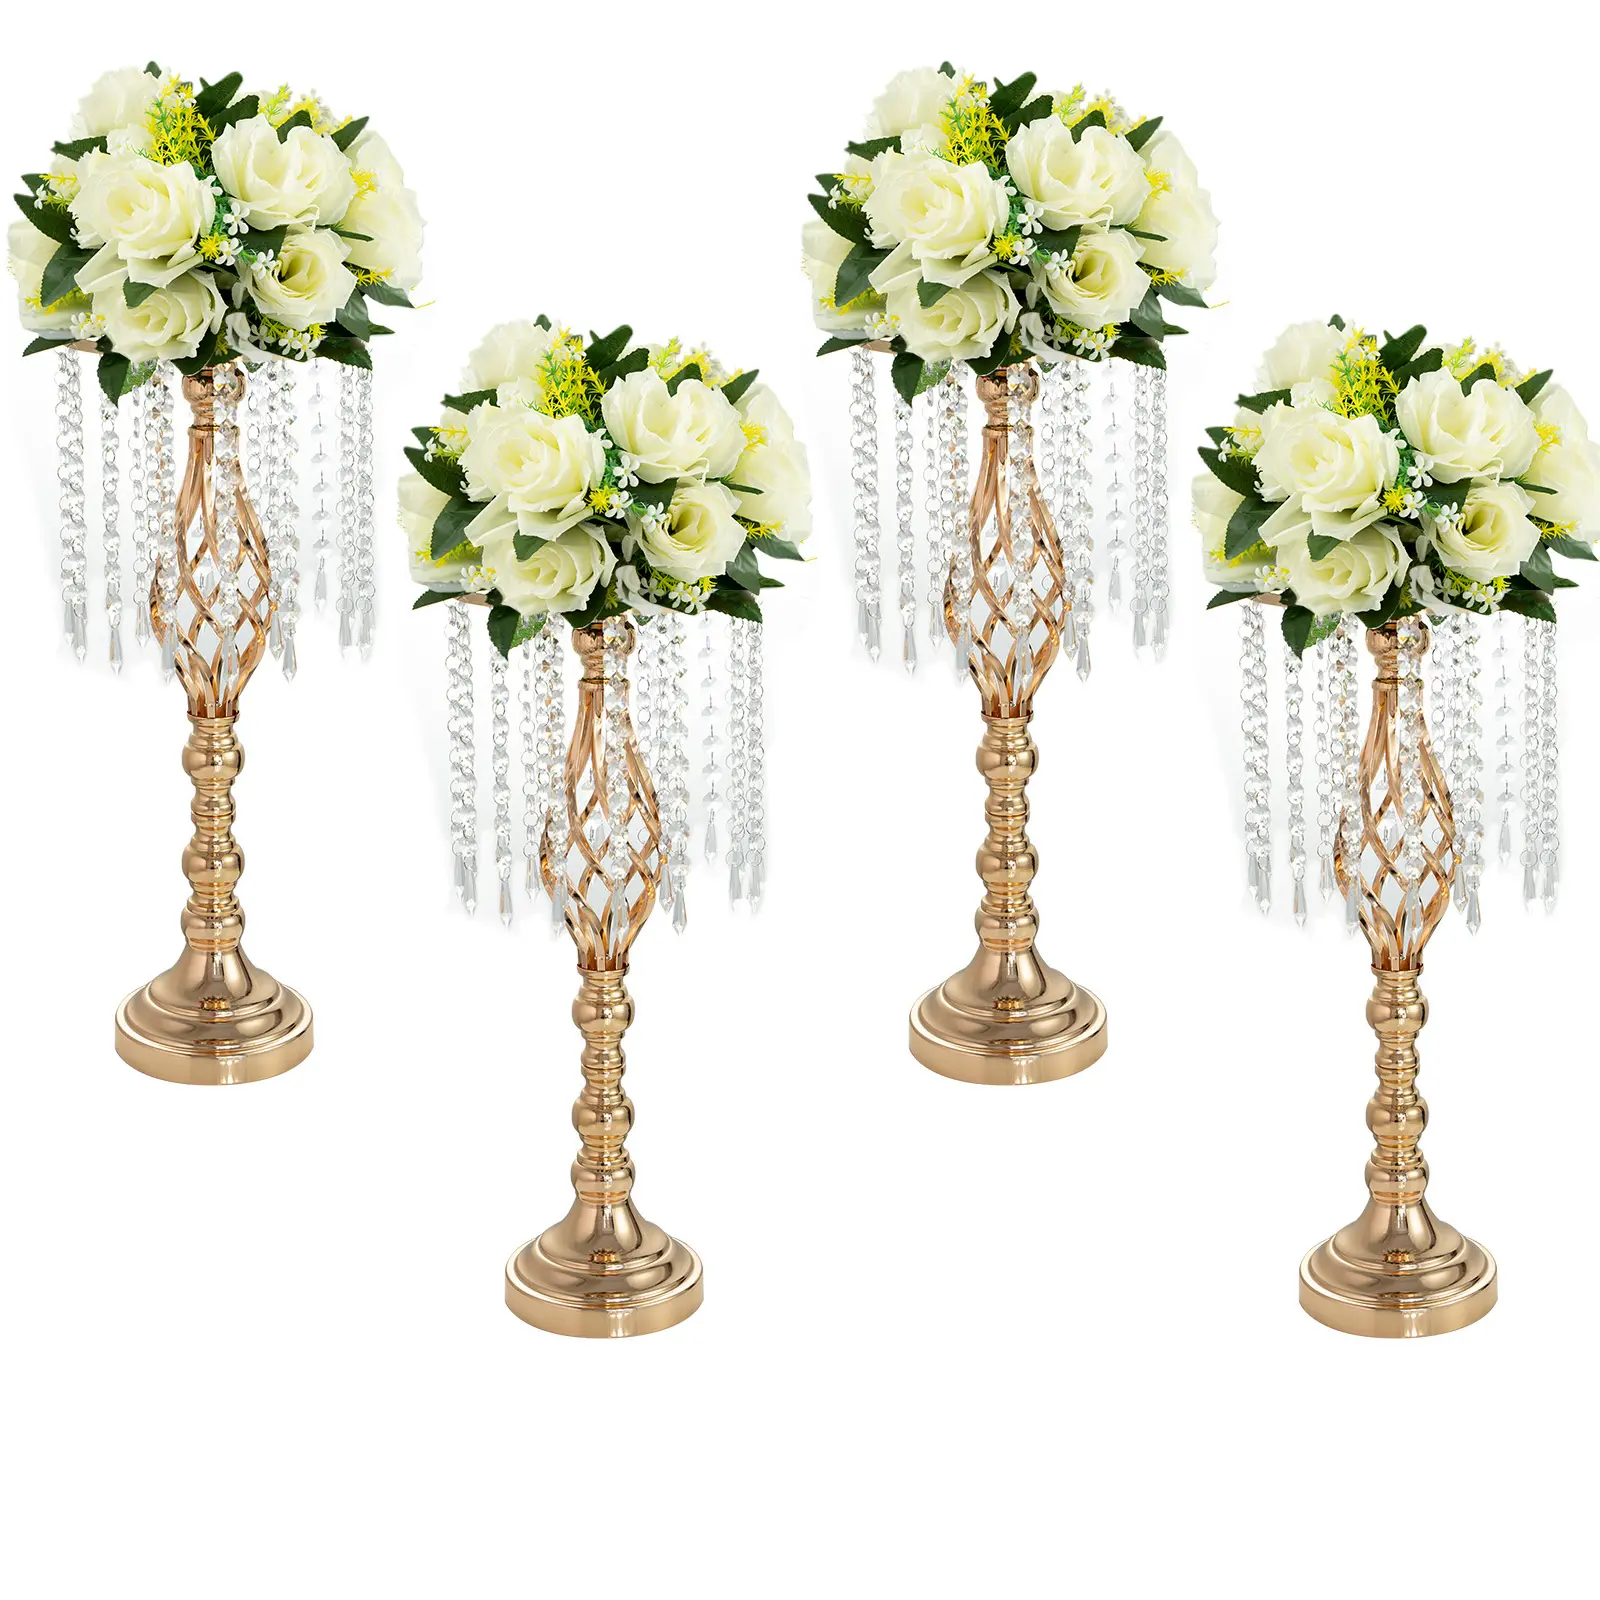 Modernes Design Blumen ständer Metall Blumen ständer Metall Blumen ständer für Hochzeit Tisch dekoration